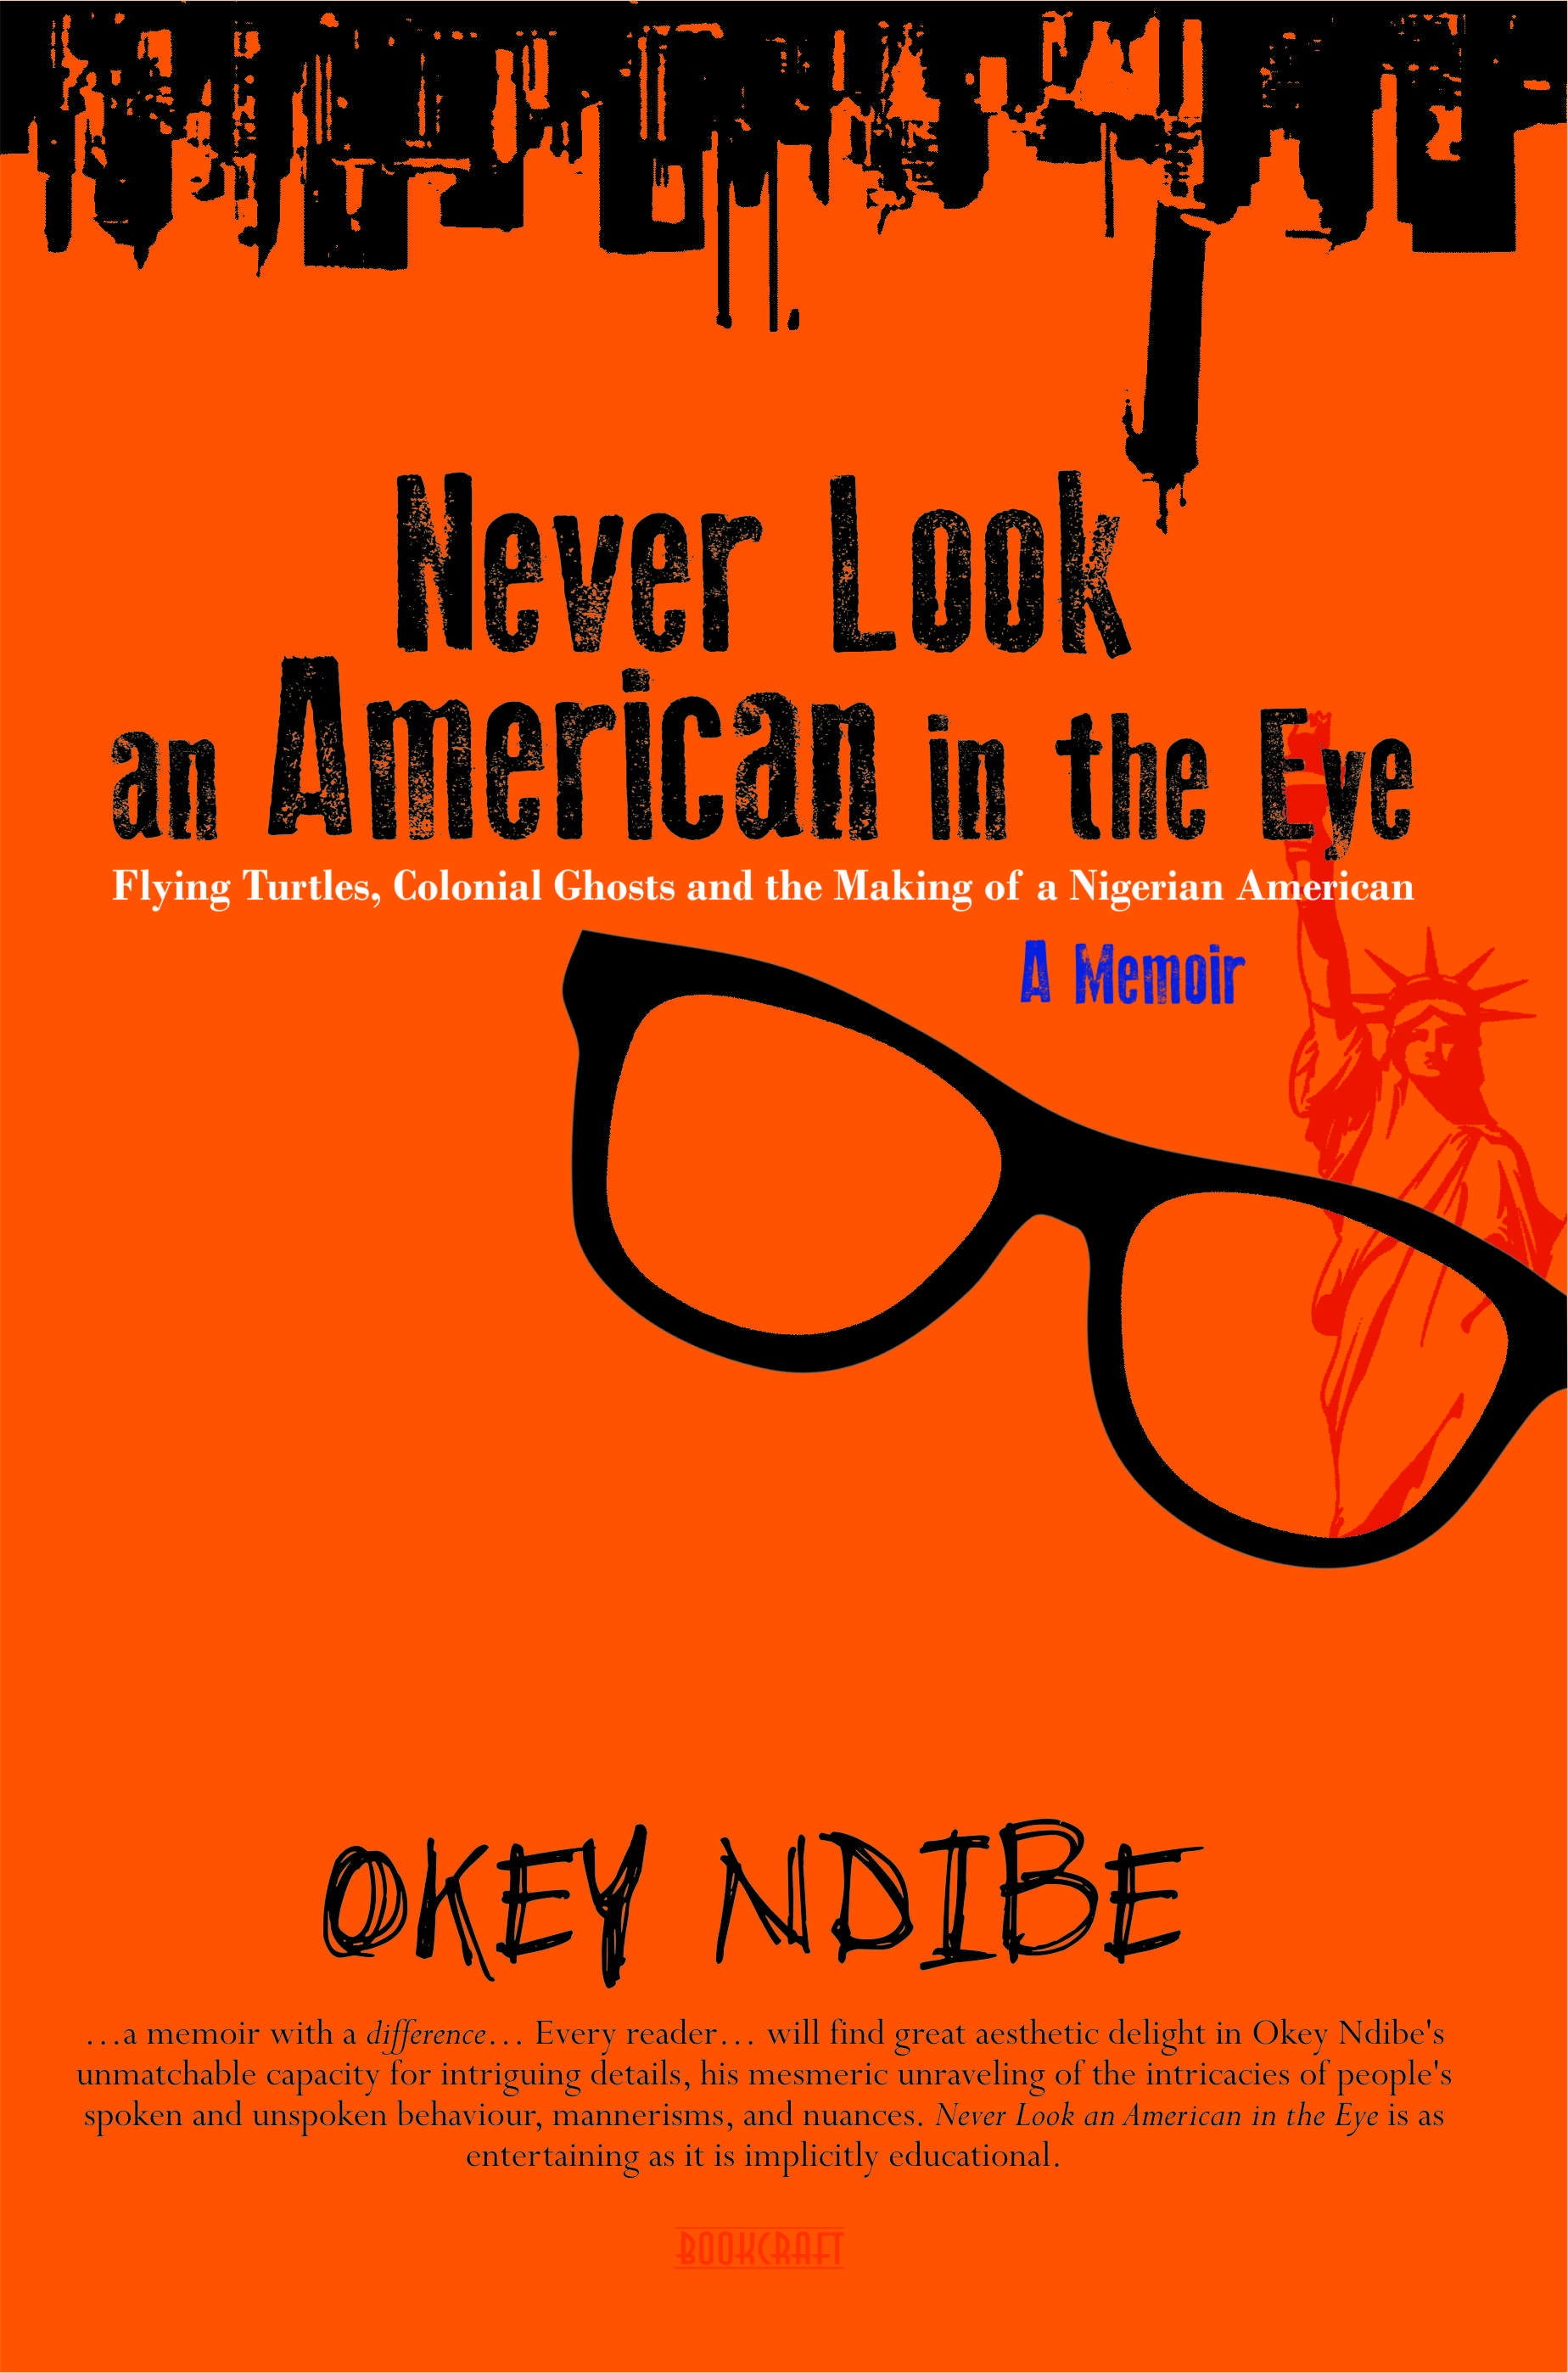 Review of Okey Ndibe’s “Never Look an American in the Eye.” By Rudolf Ogoo Okonkwo